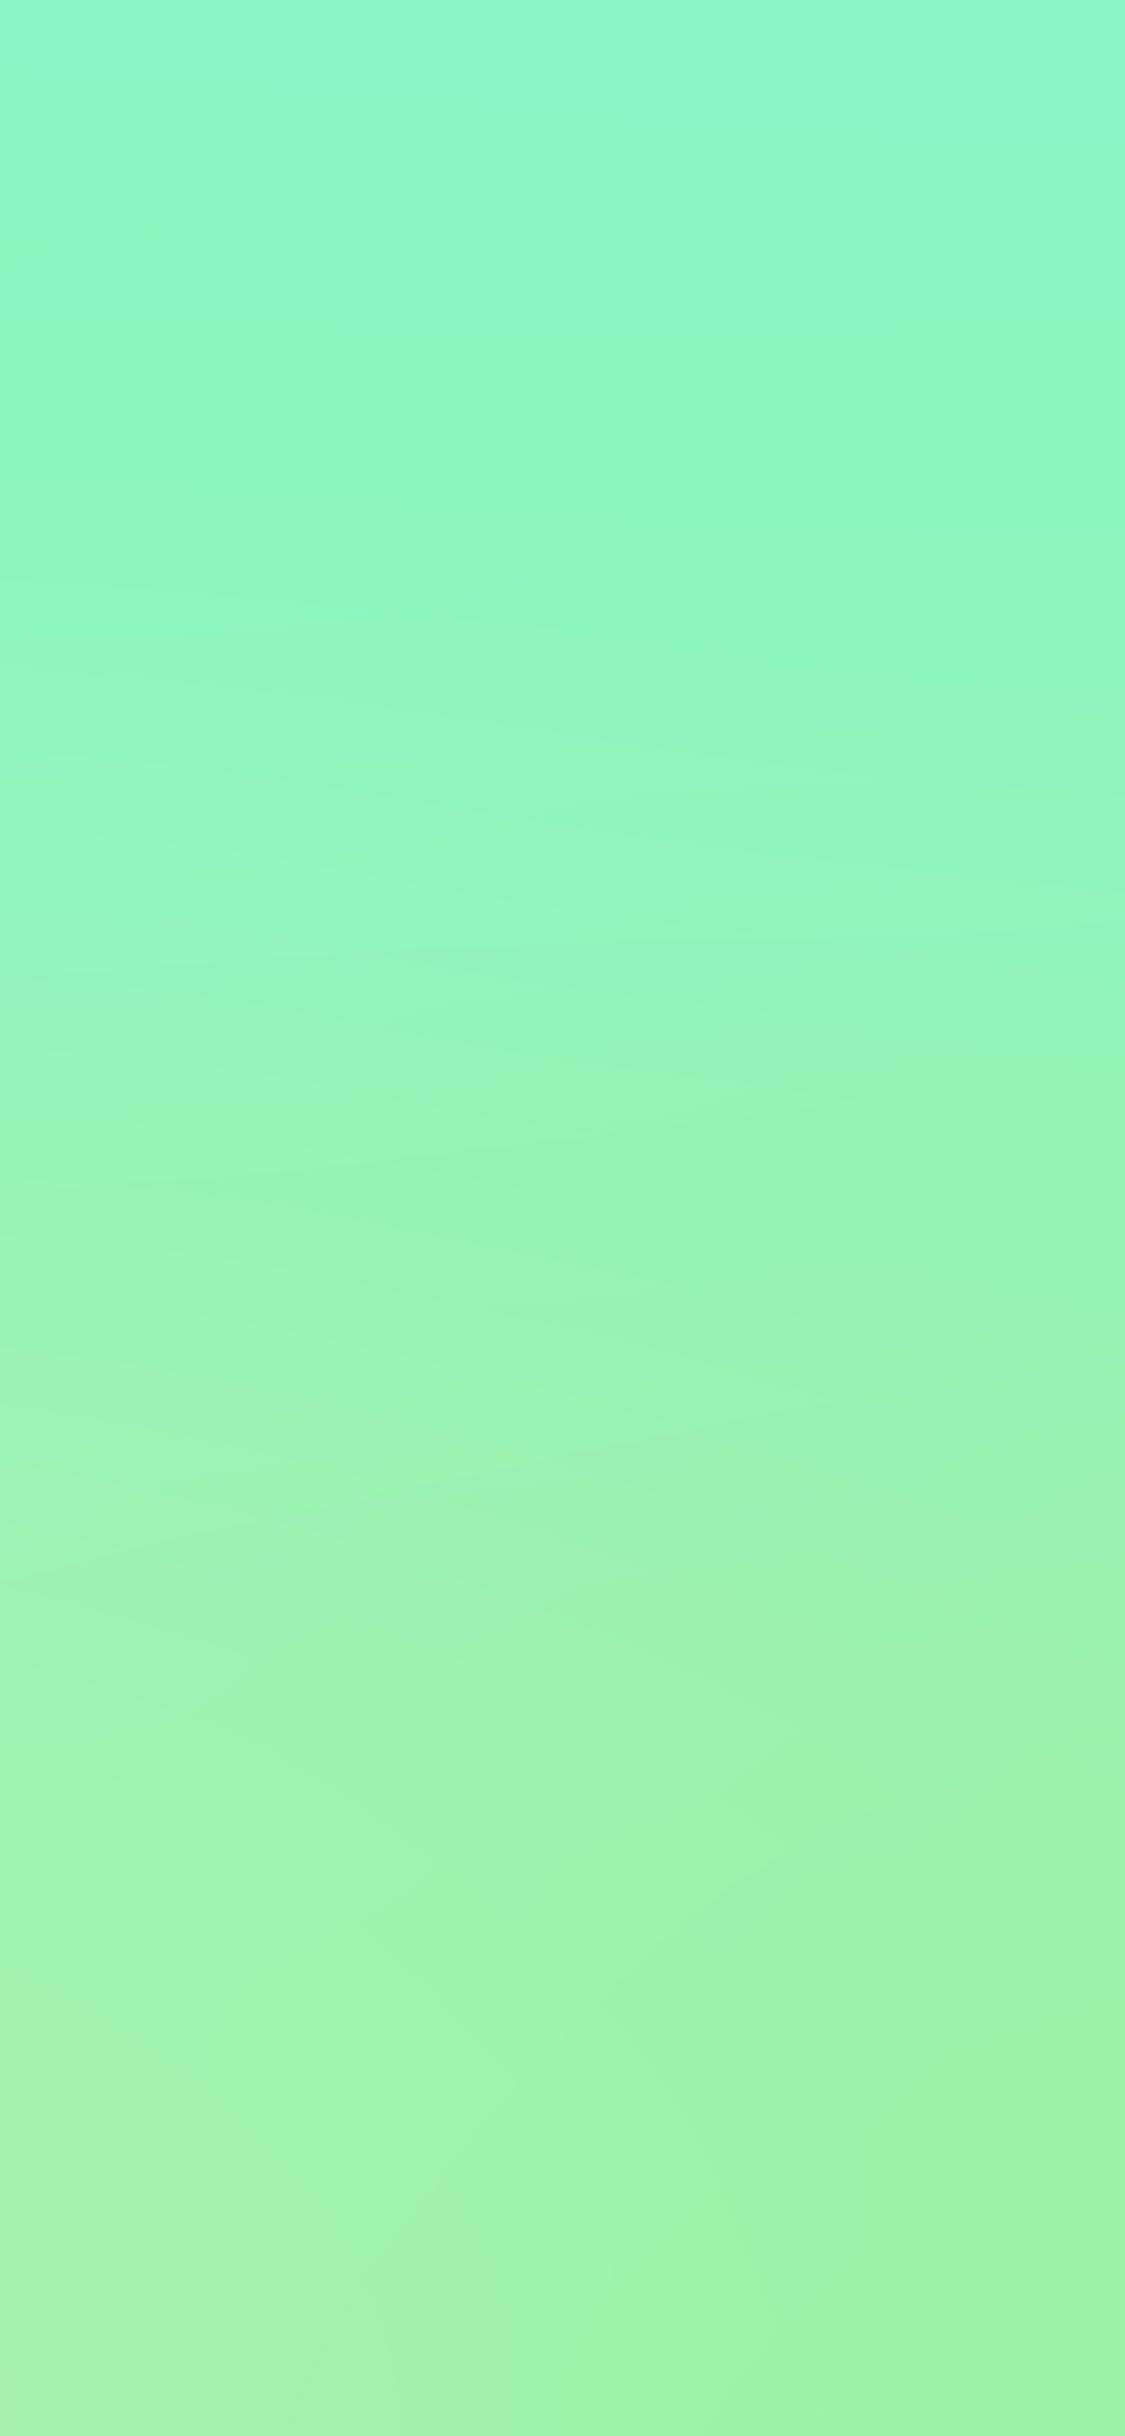 iPhone X wallpaper. green neon blur gradation